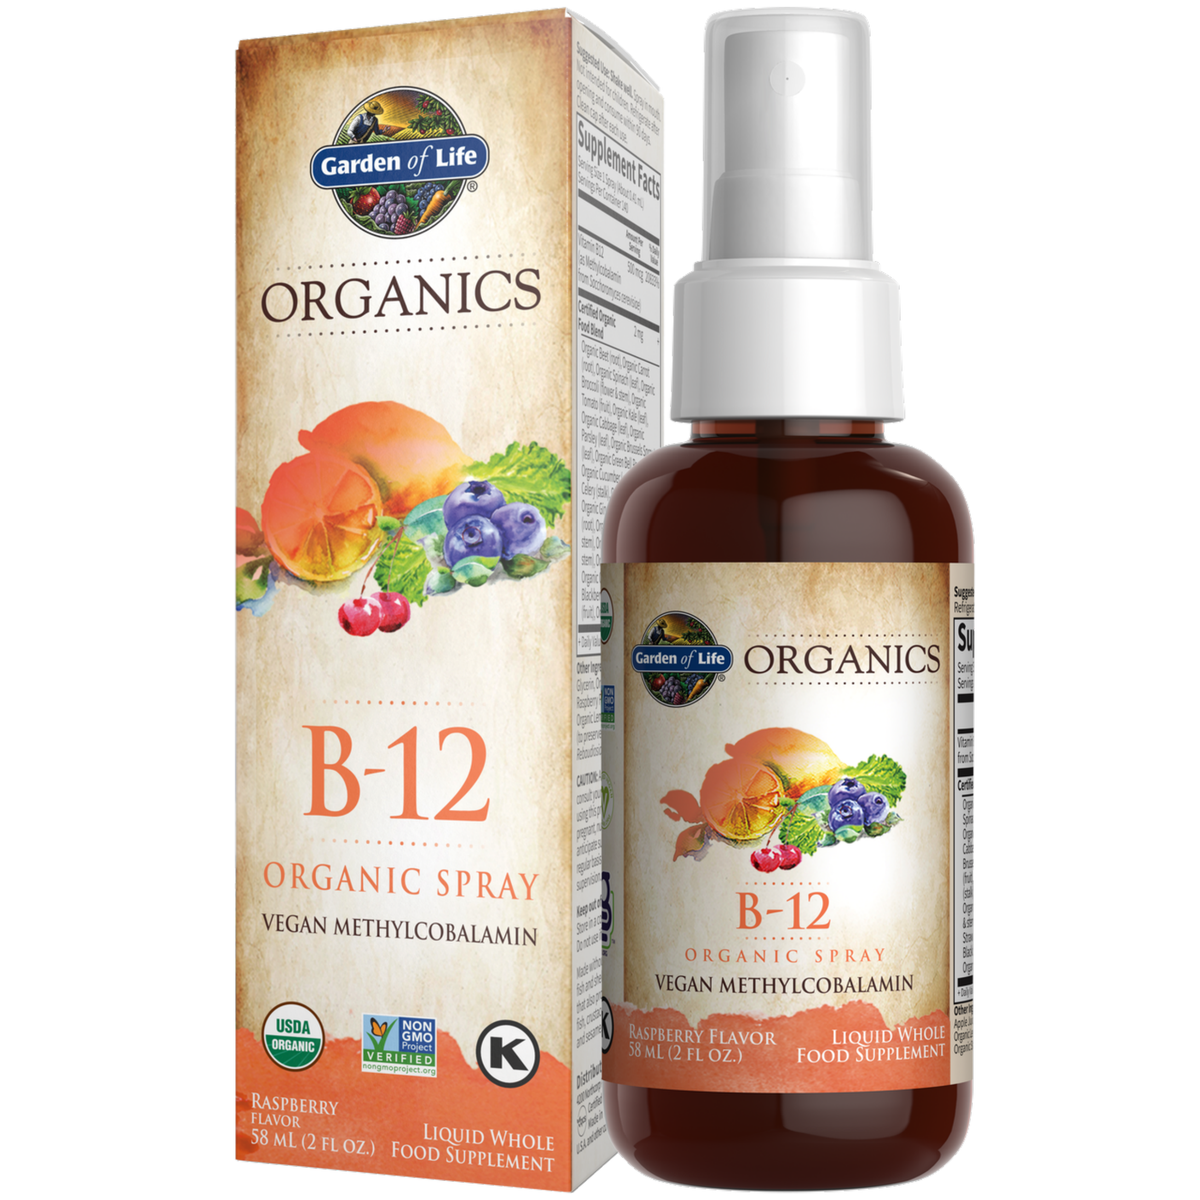 Organics B-12 Spray